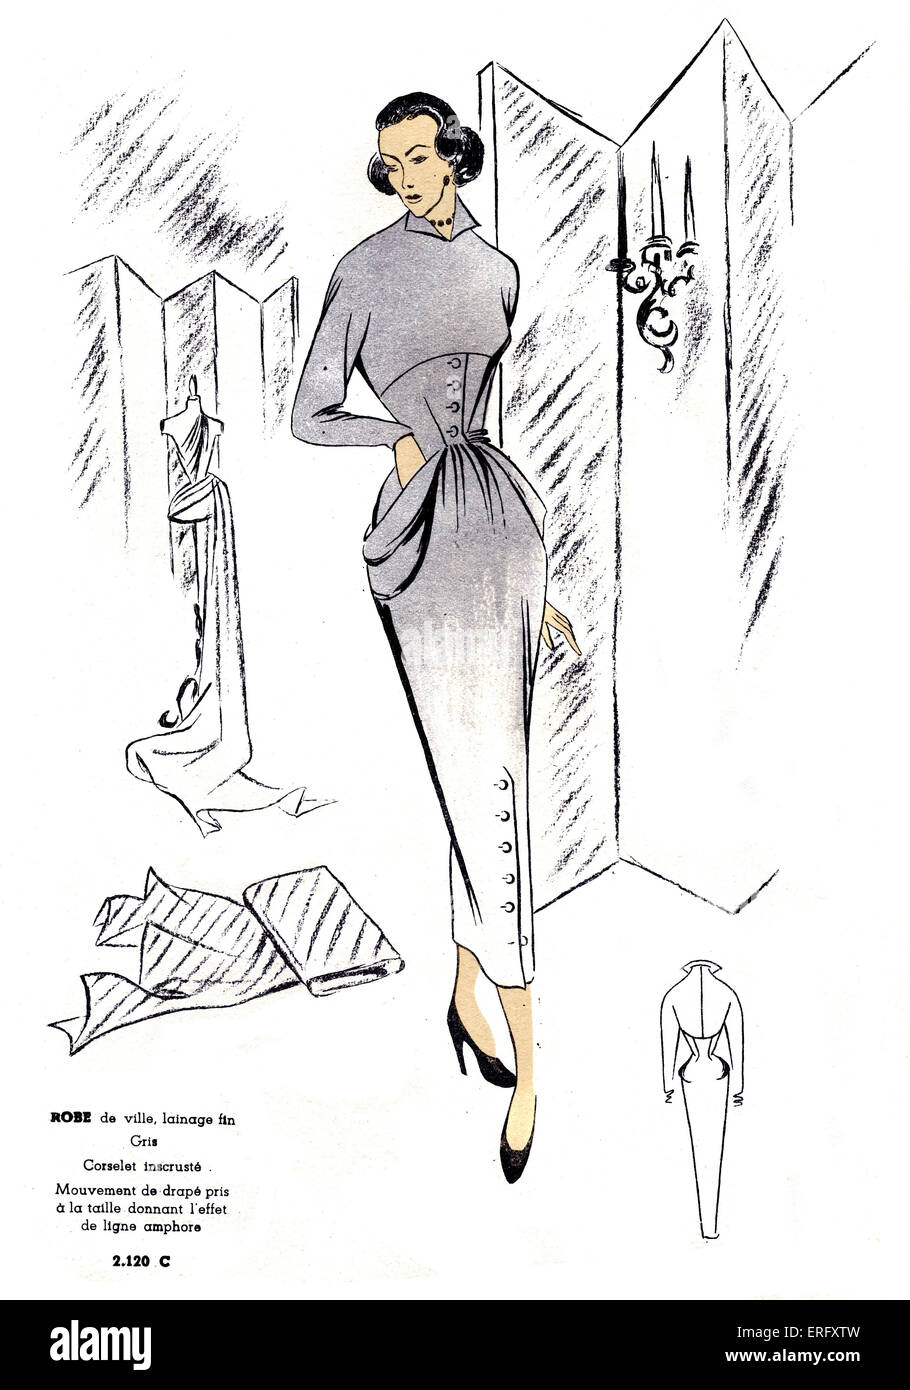 Französischer Mode, design für einen feinen grauen wollenen Stadt Kleid / Robe de Ville, Lainage fin Gris. Für den späten 1940er Jahren. Schnitt des Kleides ist wie eine Amphore. Vom Modus de France Frühlingsausgabe, 1949. Stockfoto